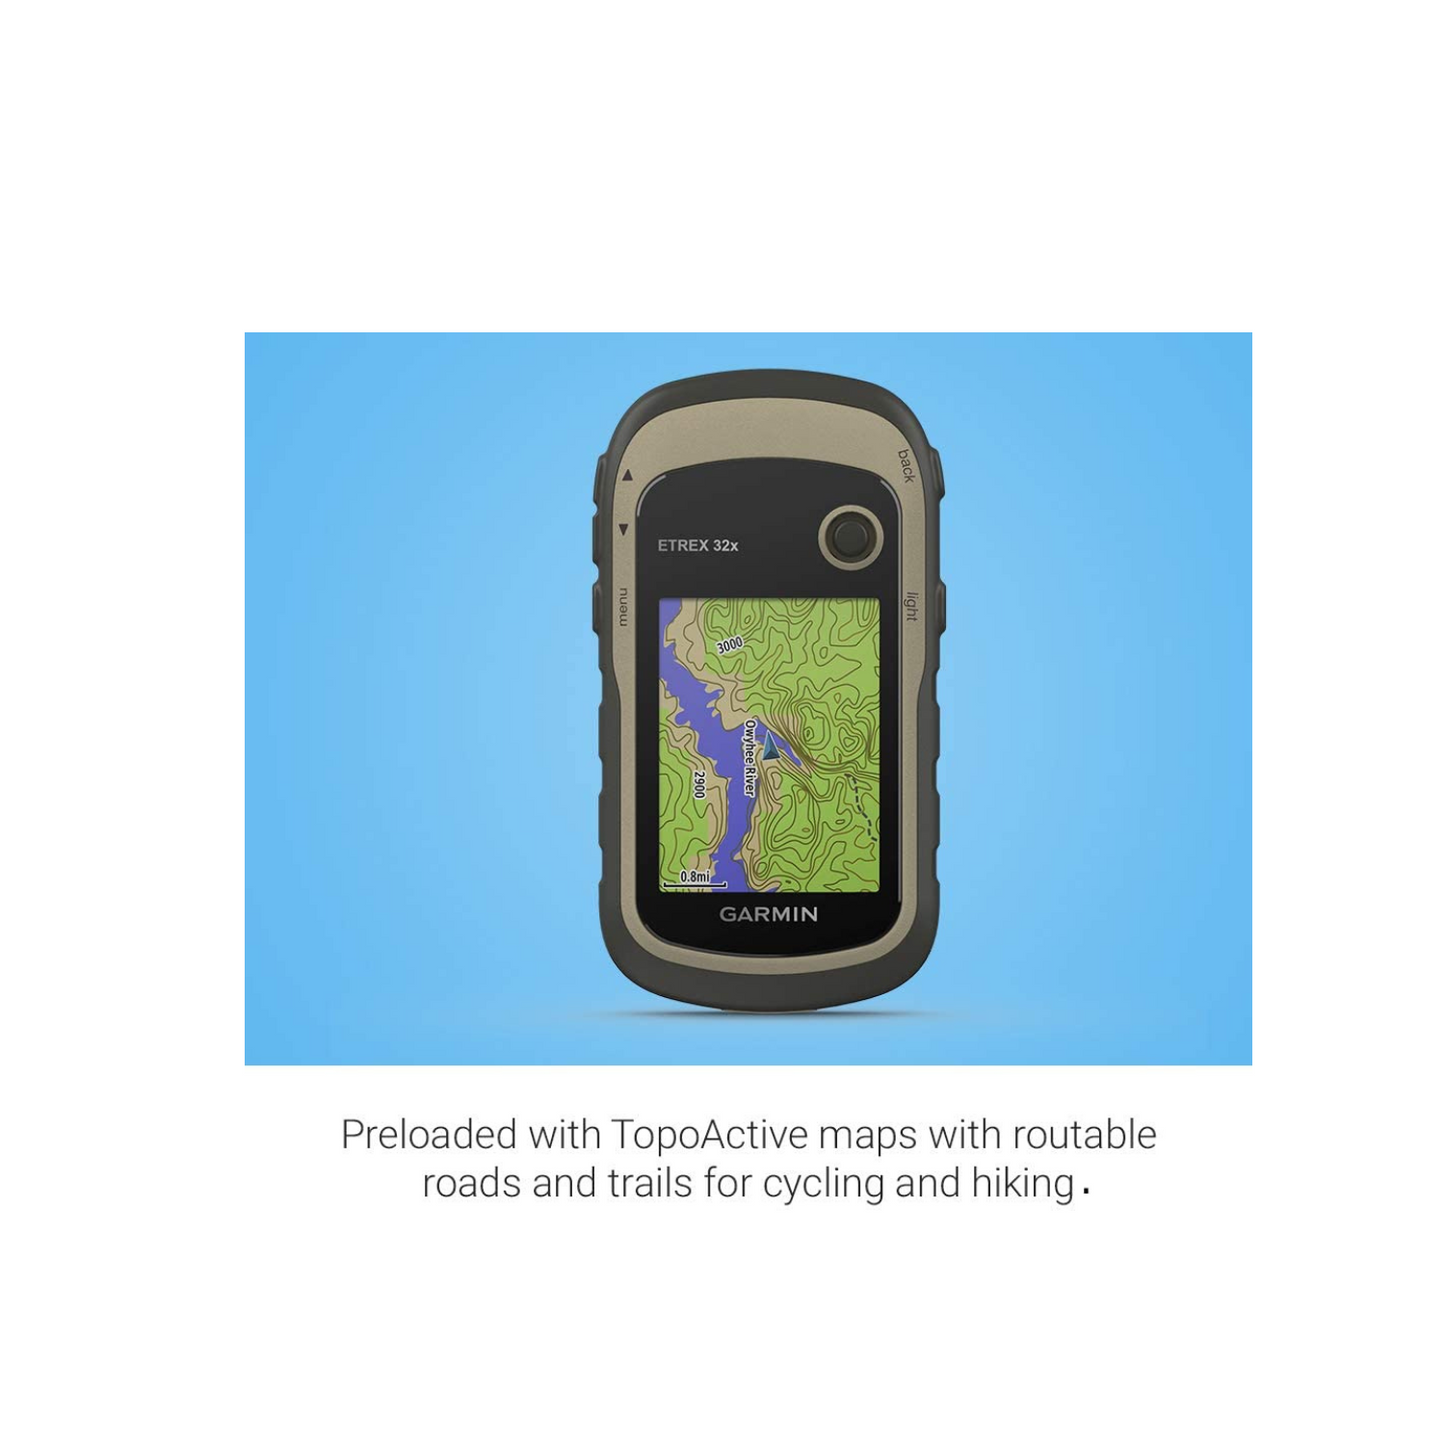 Garmin Etrex 32x, Rugged Handheld GPS Navigator